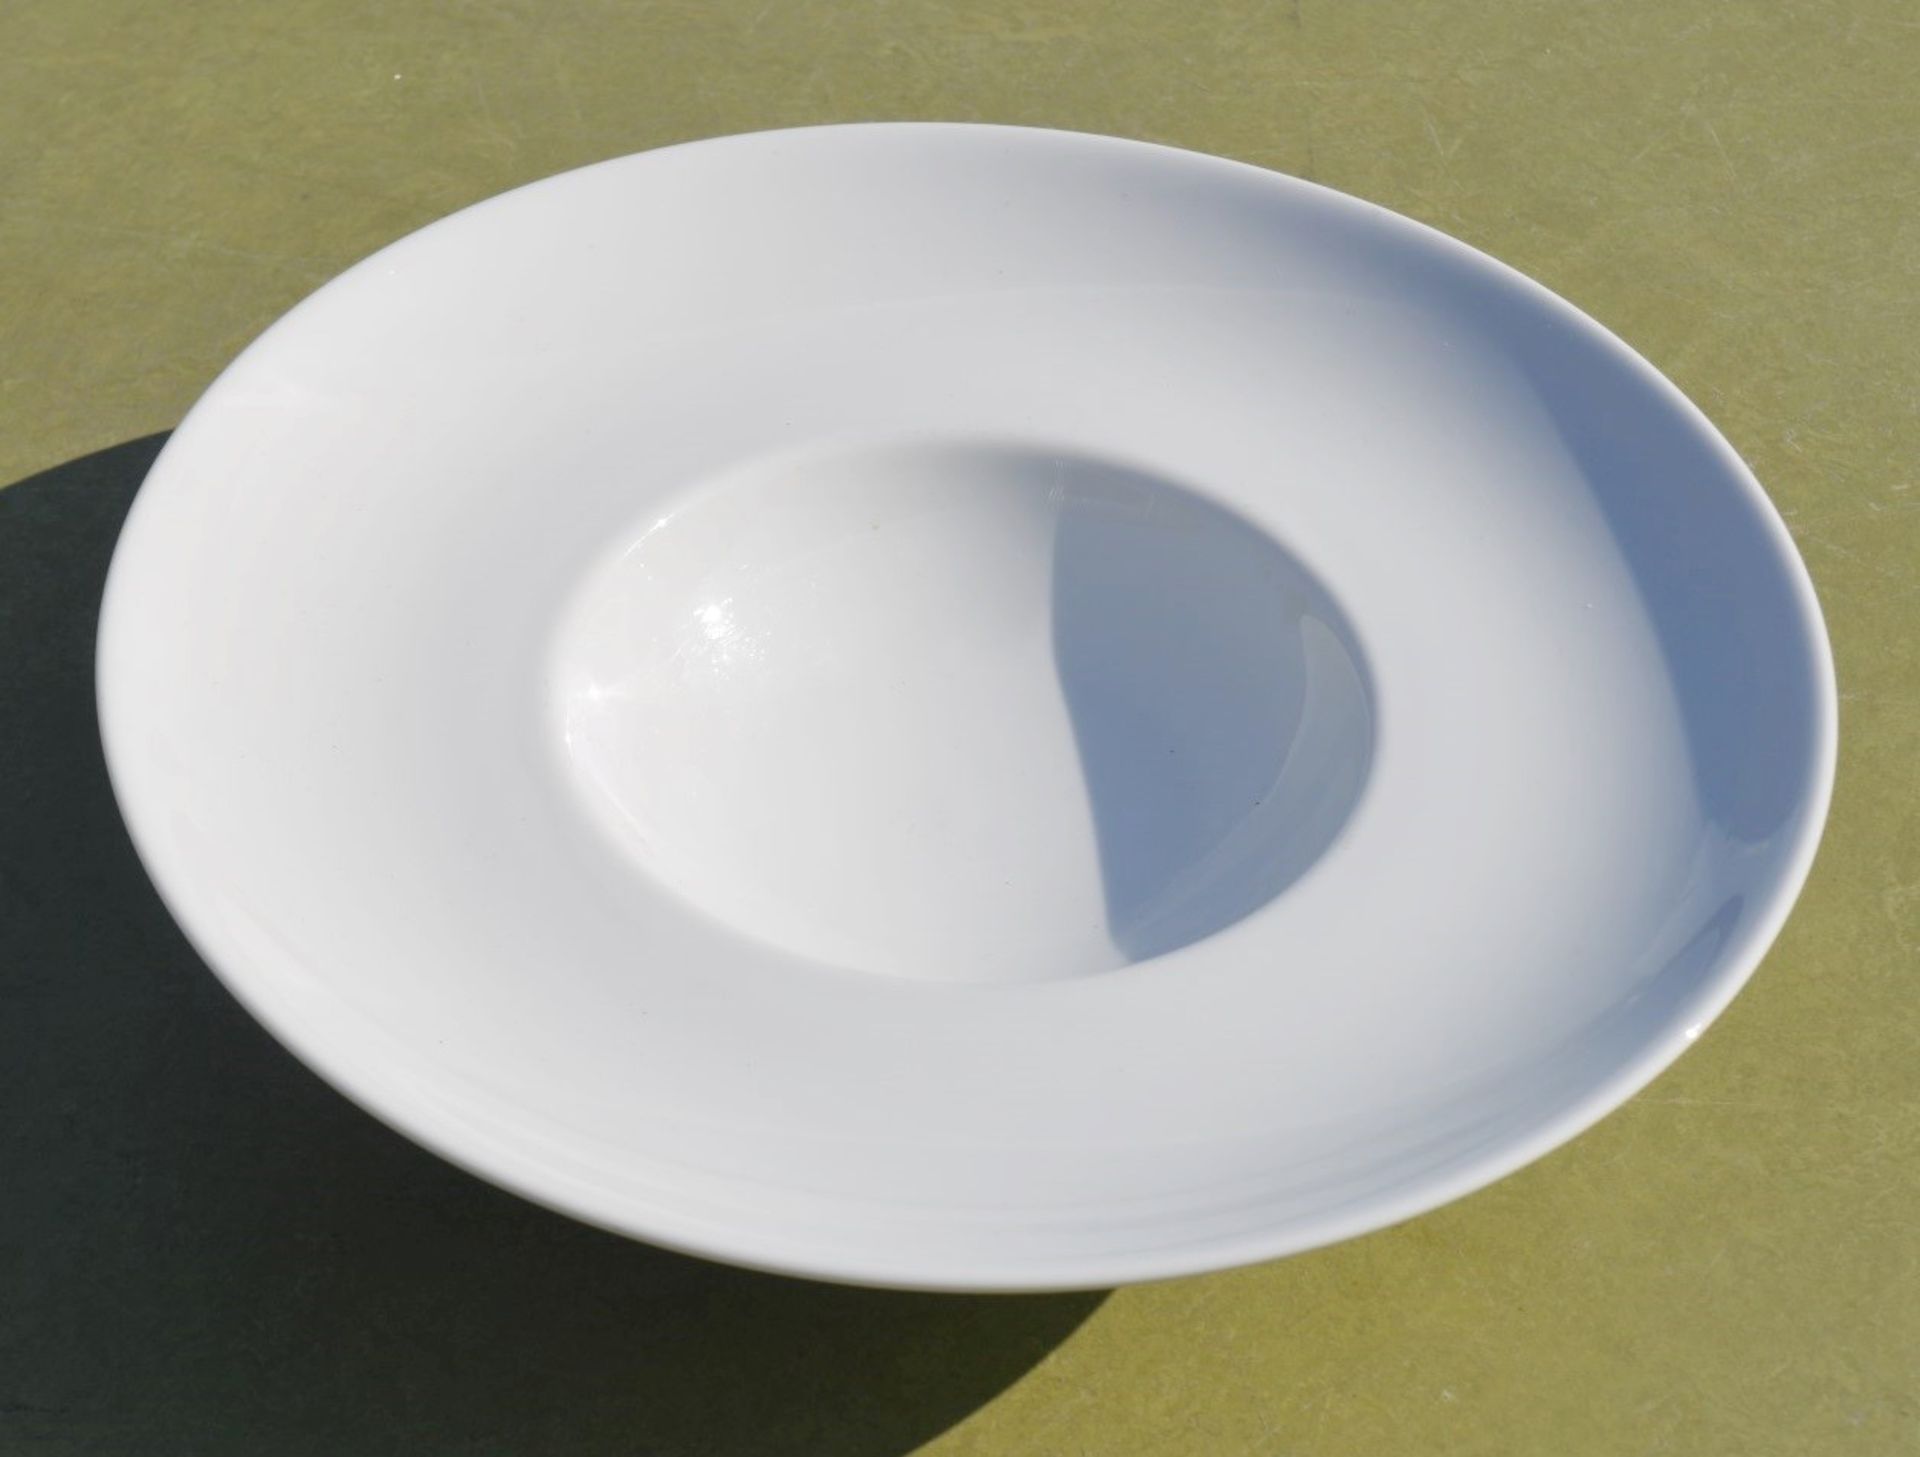 20 x PILLIVUYT Commercial Wide Rim Porcelain Soup / Pasta Bowls In White - Dimensions: 26cm Diameter